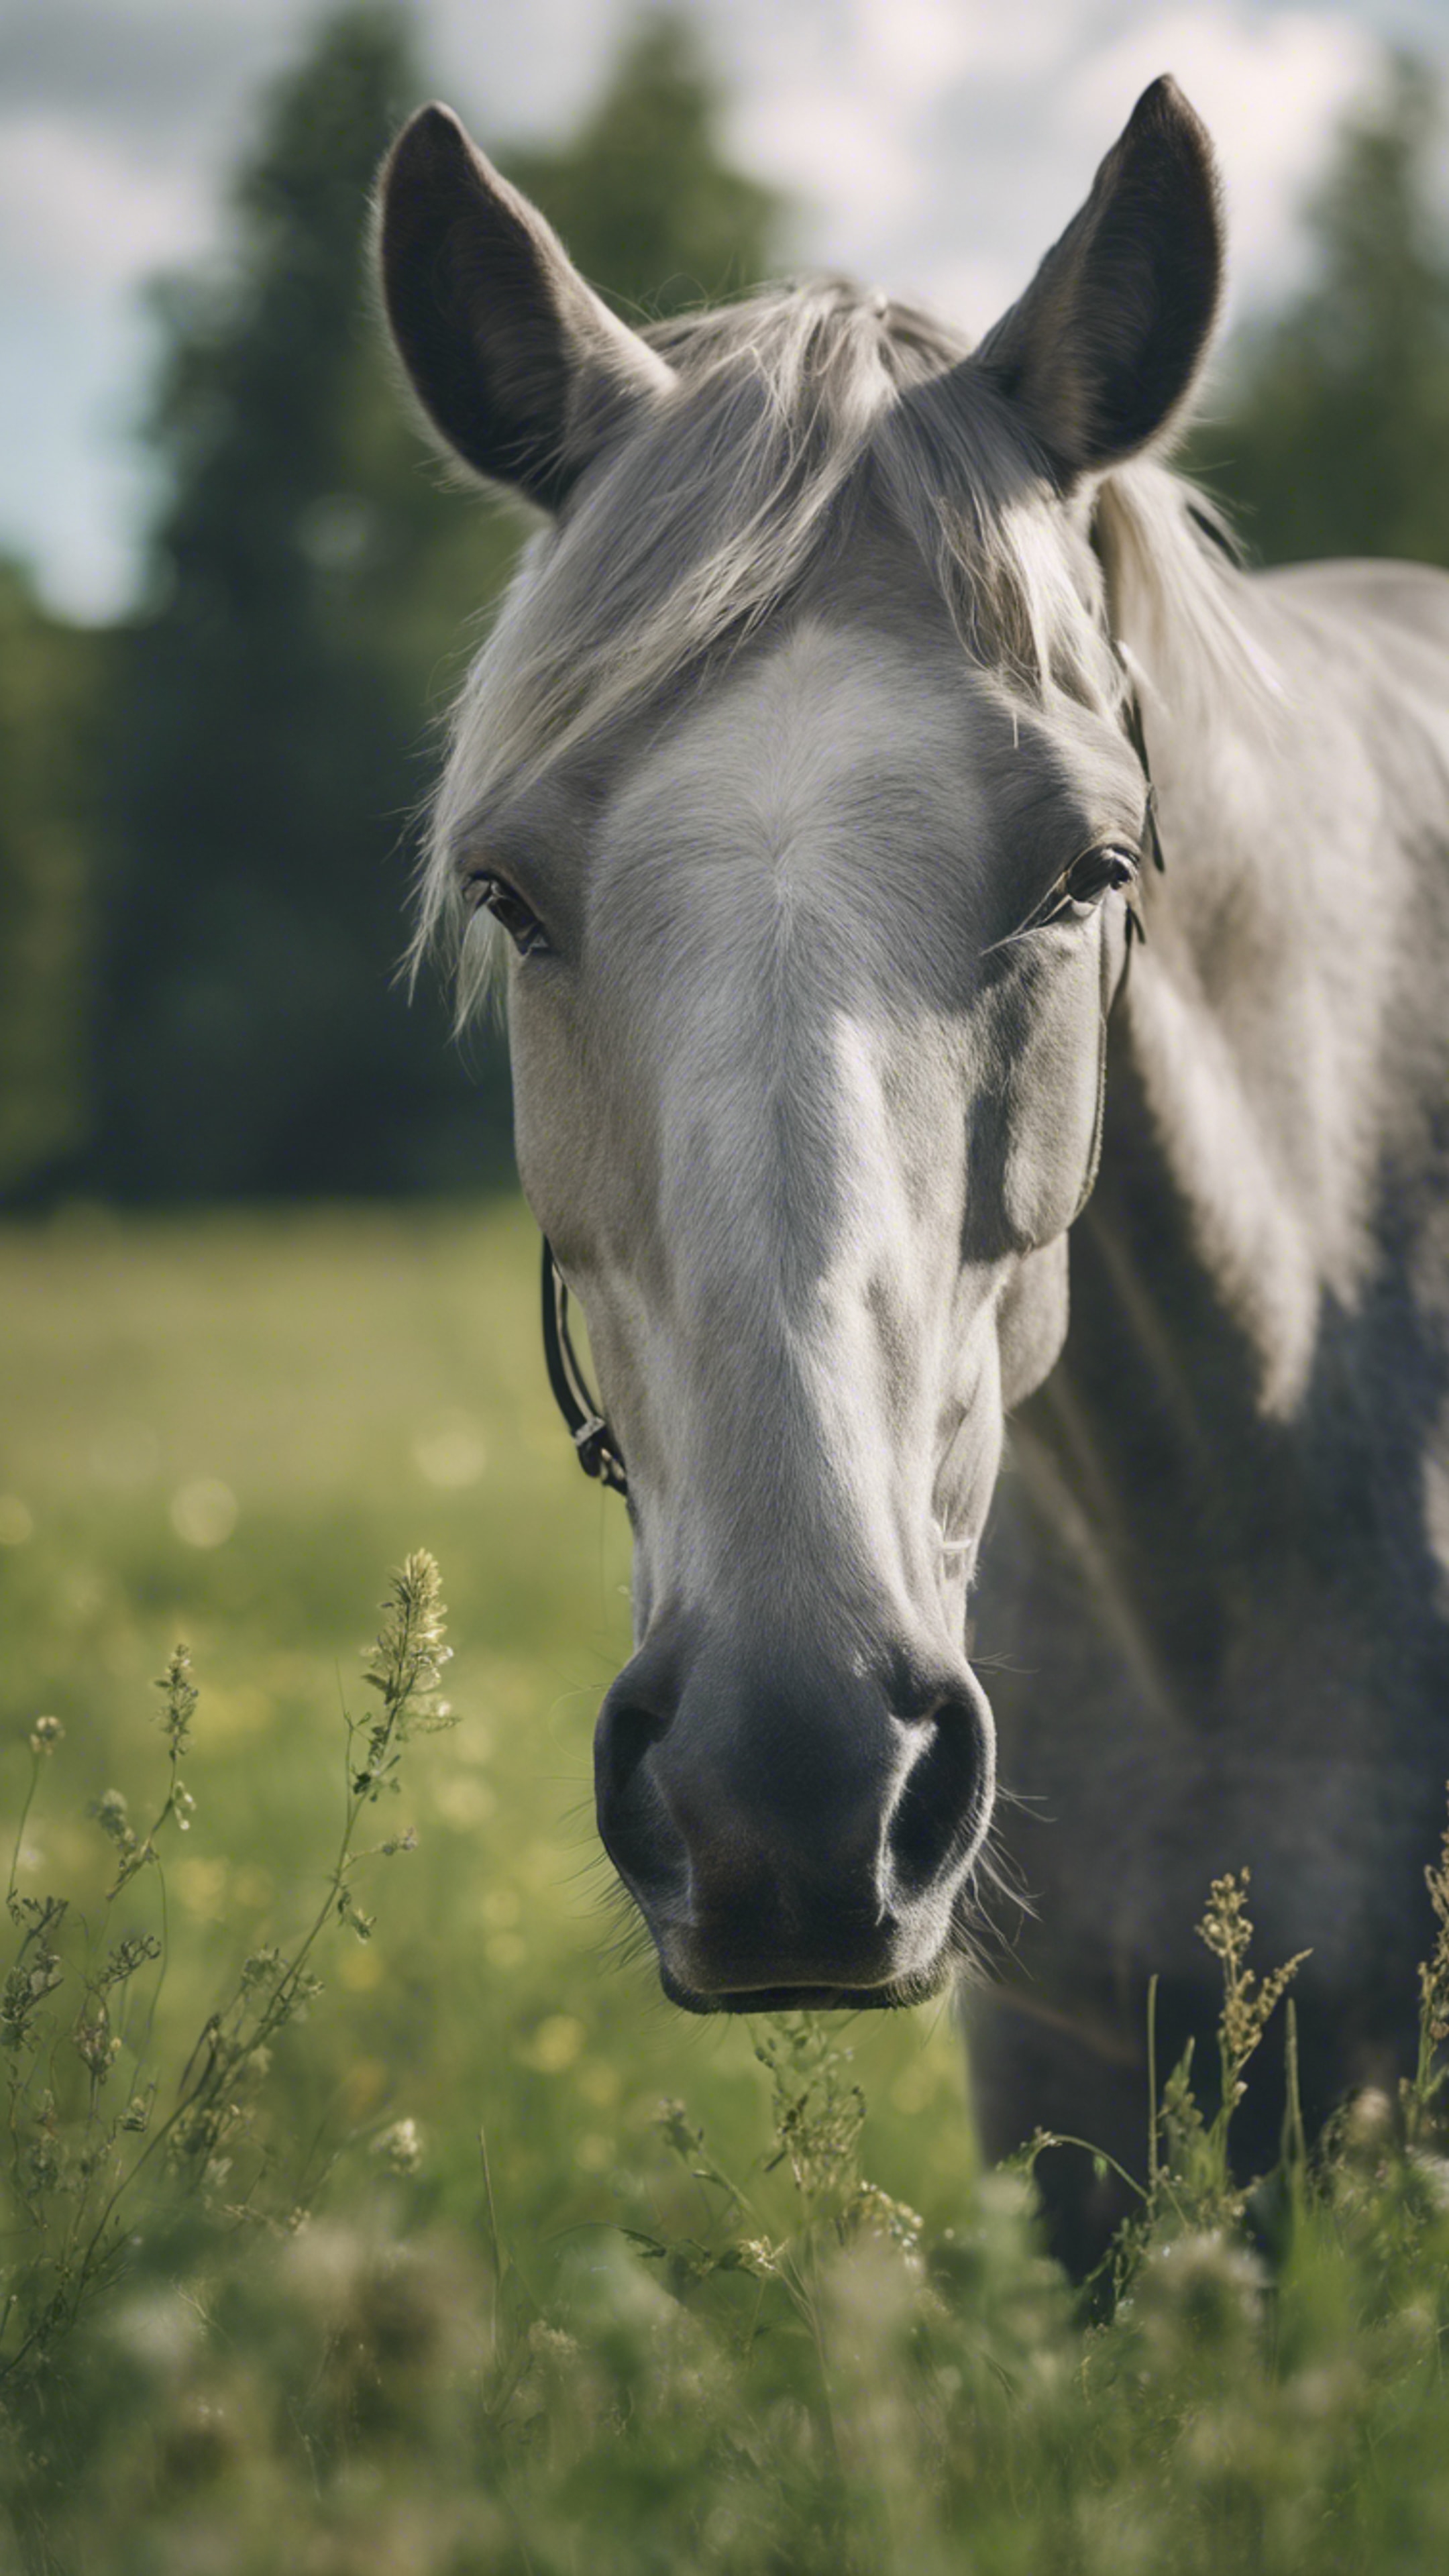 A calm grey quarter horse grazing freely in a green meadow under a cloudy sky. duvar kağıdı[ae89d2cd692c4a6c9aea]